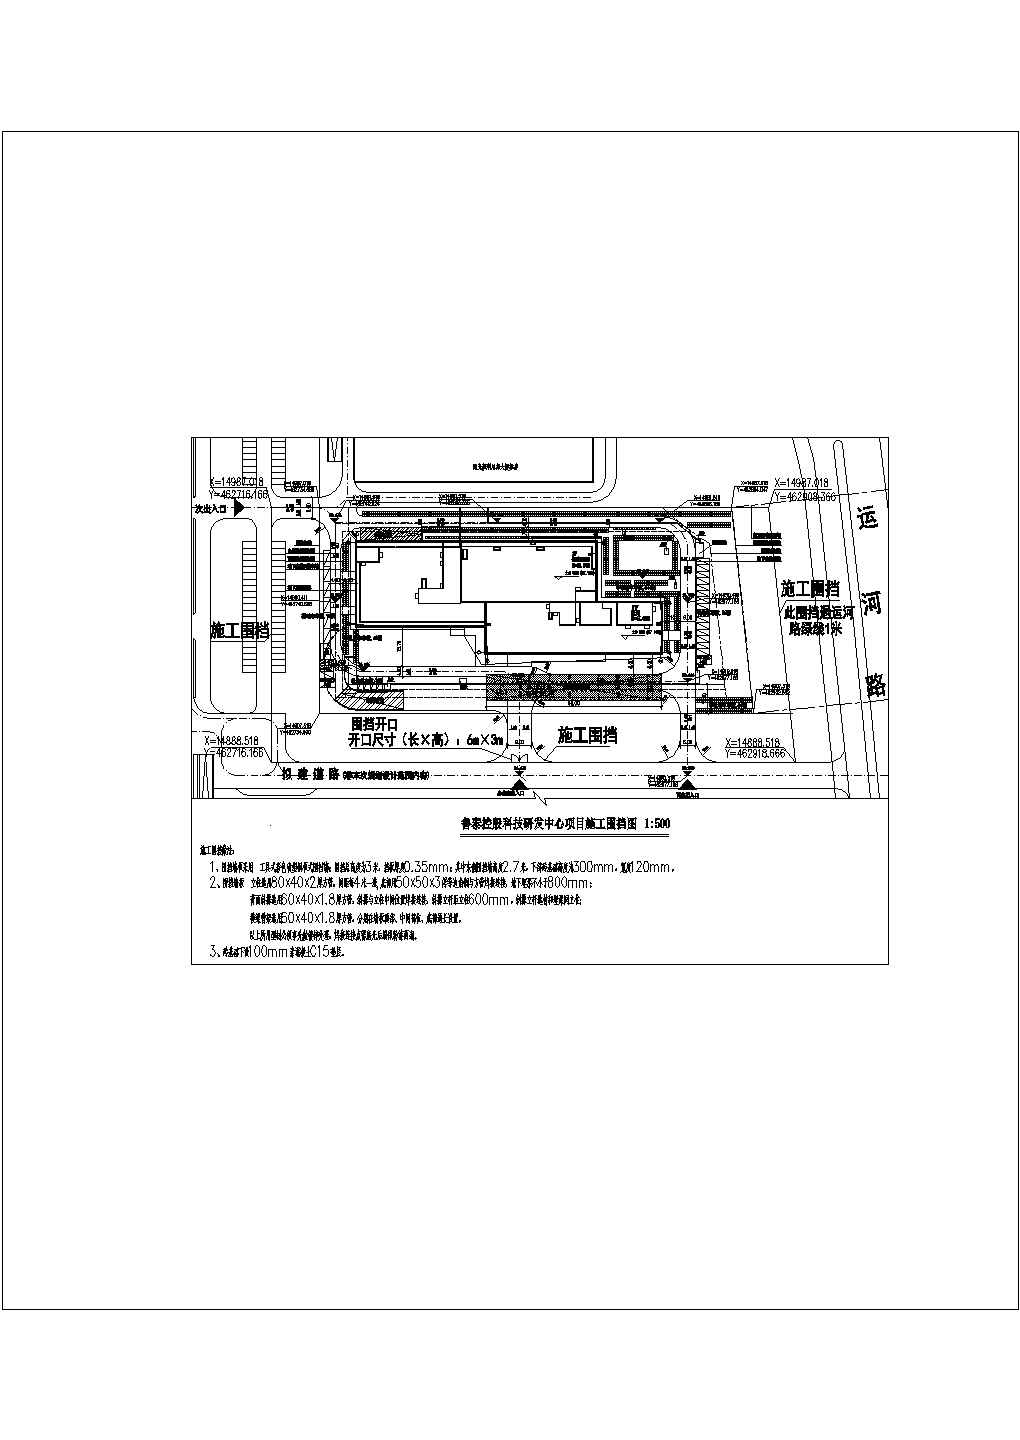 鲁泰科技研发中心-综合楼施工围挡-平面图cad设计图纸